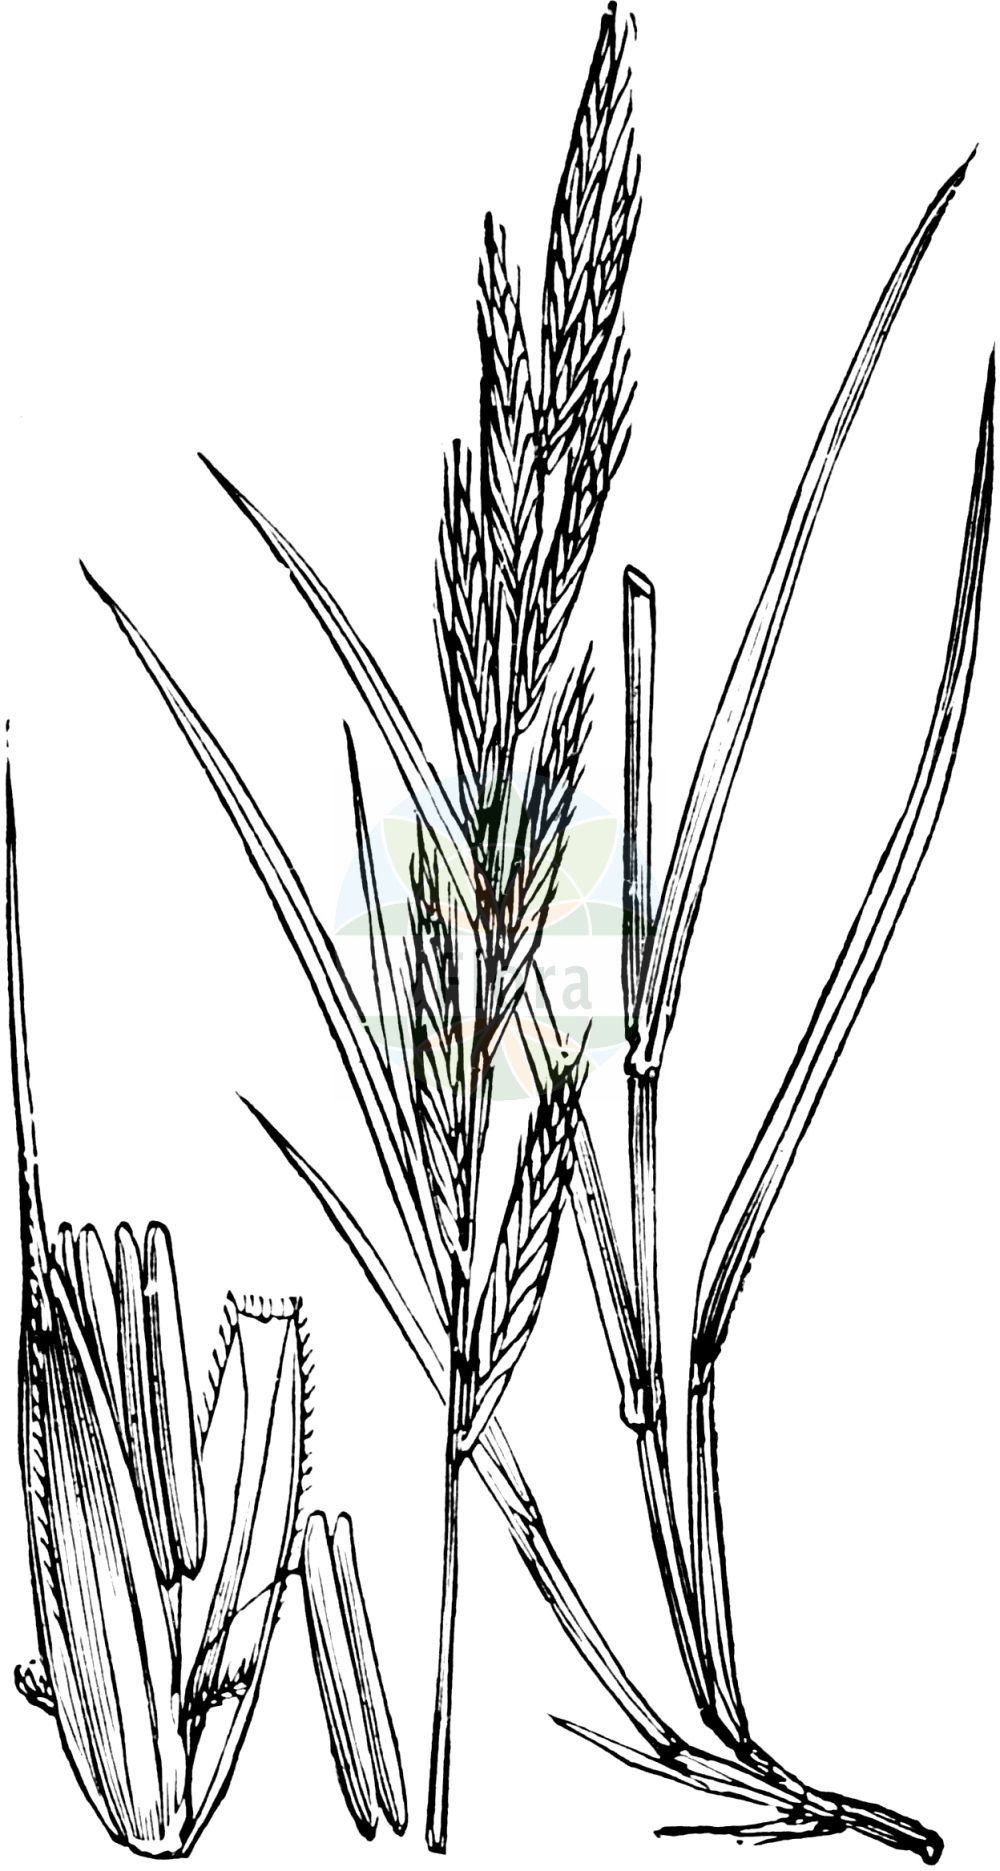 Historische Abbildung von Brachypodium pinnatum (Fieder-Zwenke - Tor-grass). Das Bild zeigt Blatt, Bluete, Frucht und Same. ---- Historical Drawing of Brachypodium pinnatum (Fieder-Zwenke - Tor-grass). The image is showing leaf, flower, fruit and seed.(Brachypodium pinnatum,Fieder-Zwenke,Tor-grass,Brachypodium pinnatum,Bromus pinnatus,Fieder-Zwenke,Tor-grass,Heath False-brome,Chalk False Brome,False Japanese Bromegrass,Brachypodium,Zwenke,False Brome,Poaceae,Süßgräser,Grass family,Blatt,Bluete,Frucht,Same,leaf,flower,fruit,seed,Fitch et al. (1880))